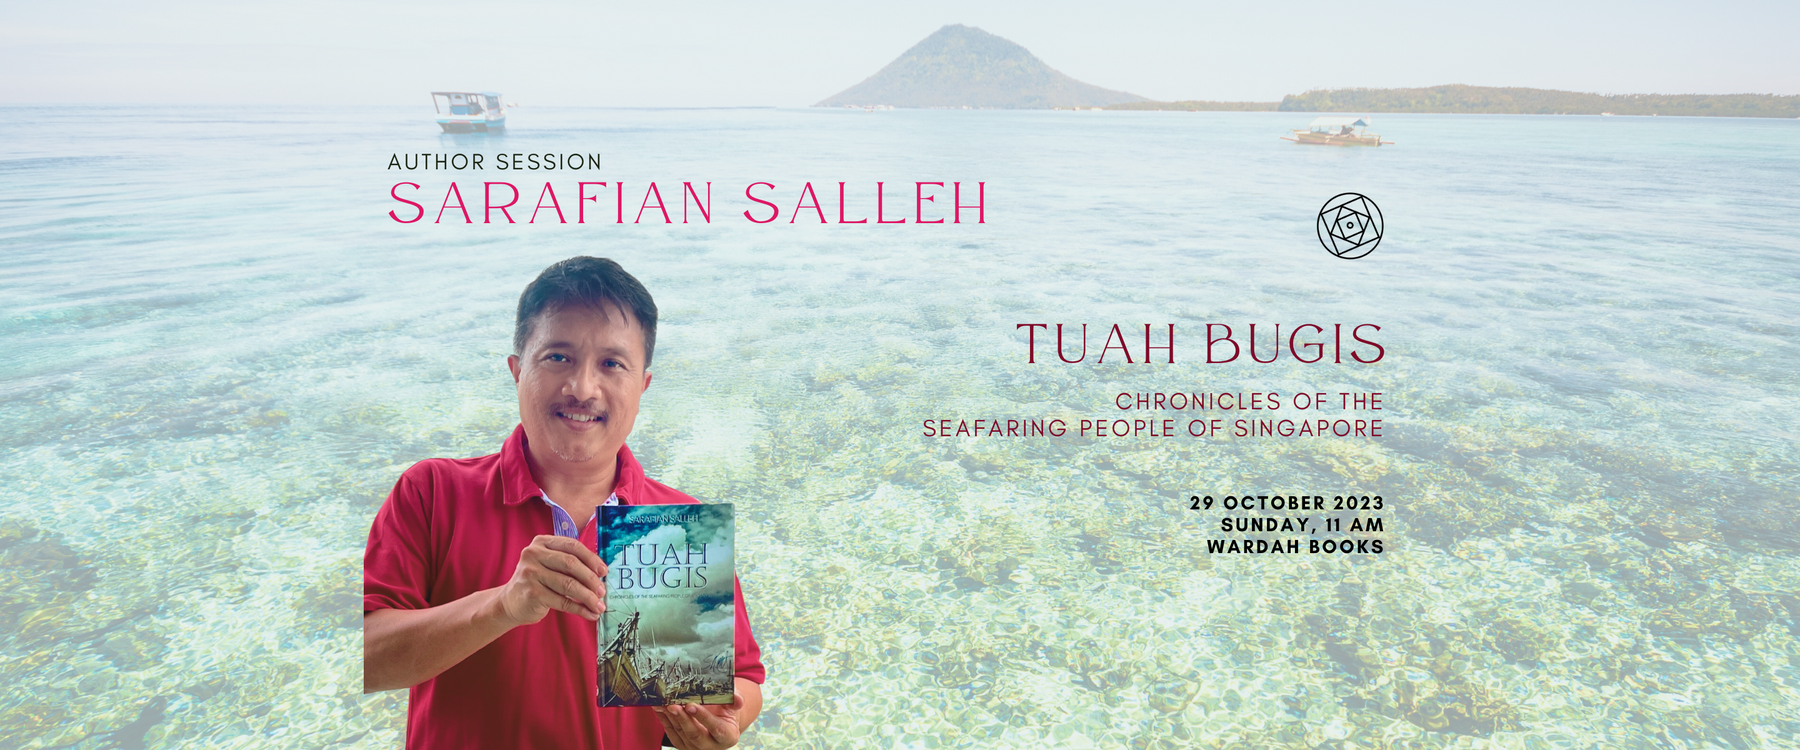 Author Session: Sarafian Salleh